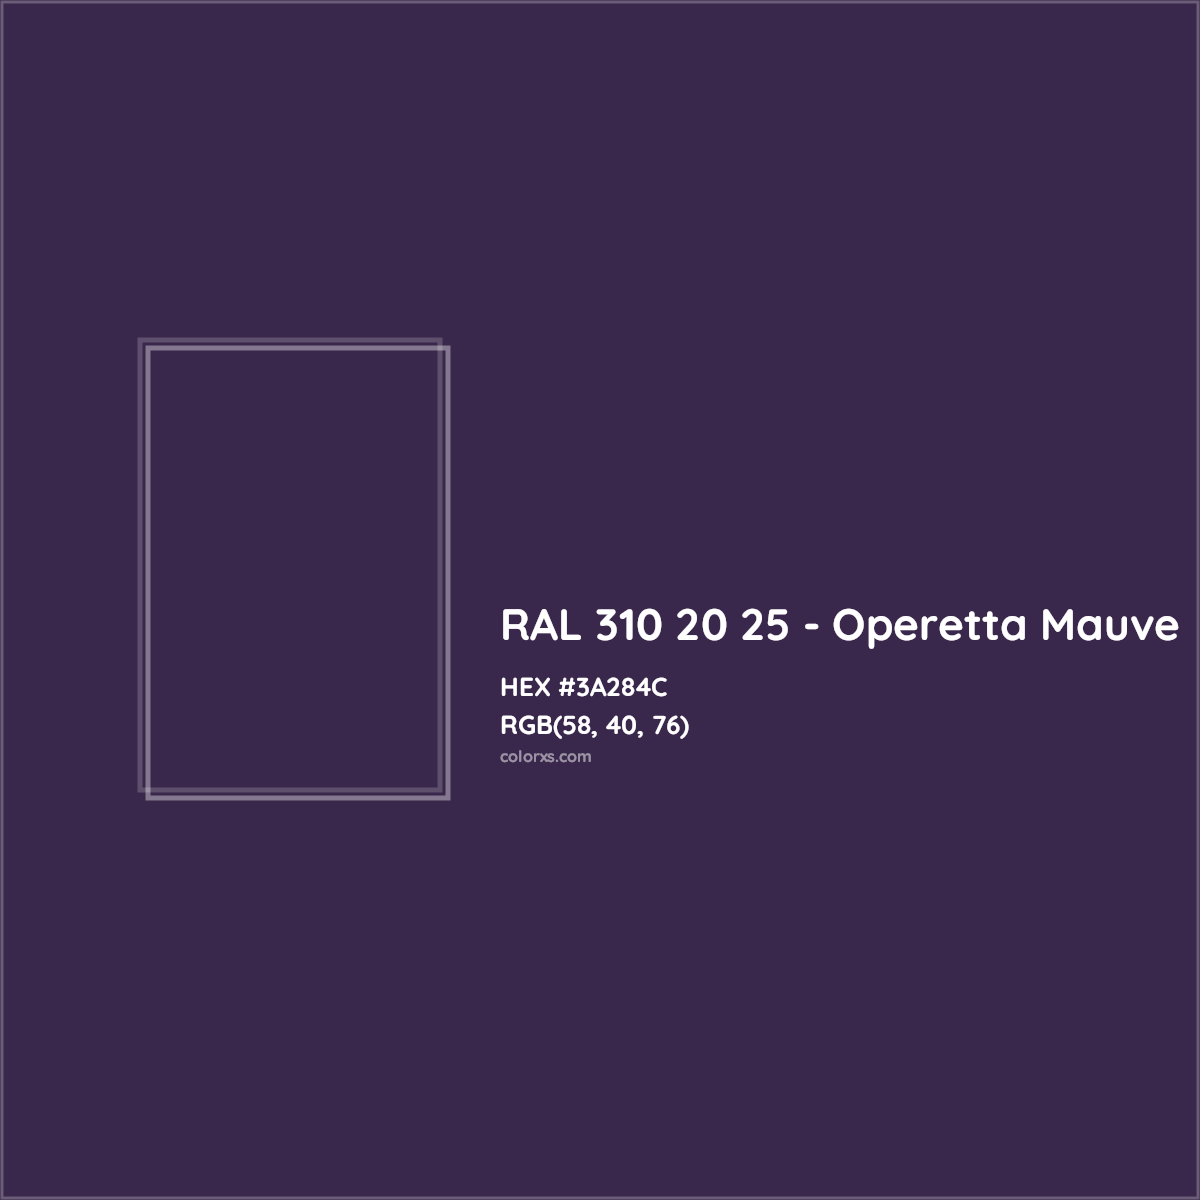 HEX #3A284C RAL 310 20 25 - Operetta Mauve CMS RAL Design - Color Code